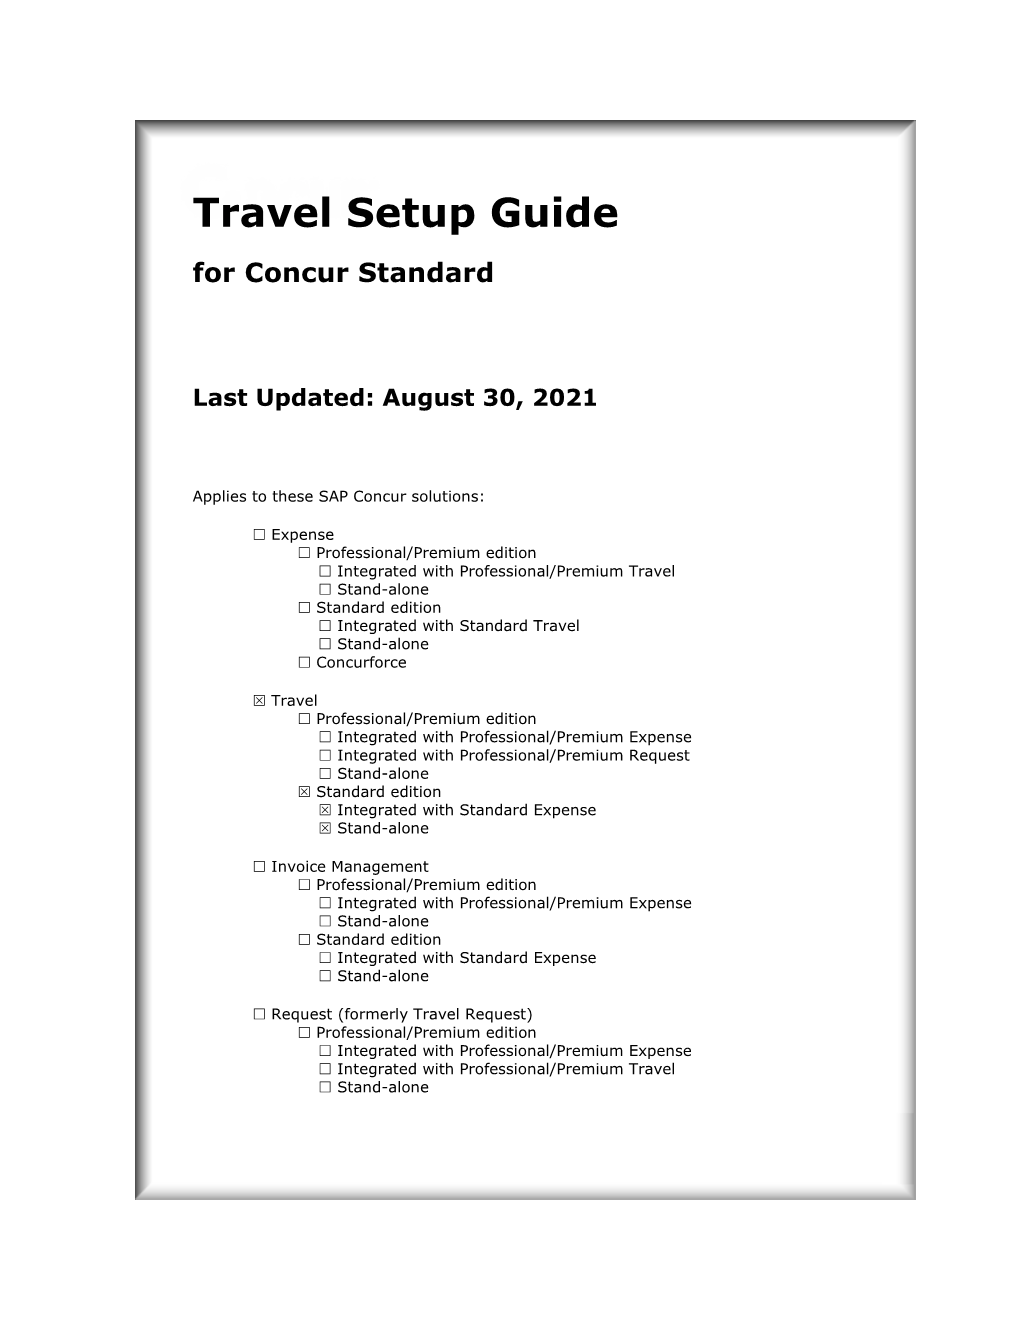 Travel Setup Guide for Concur Standard